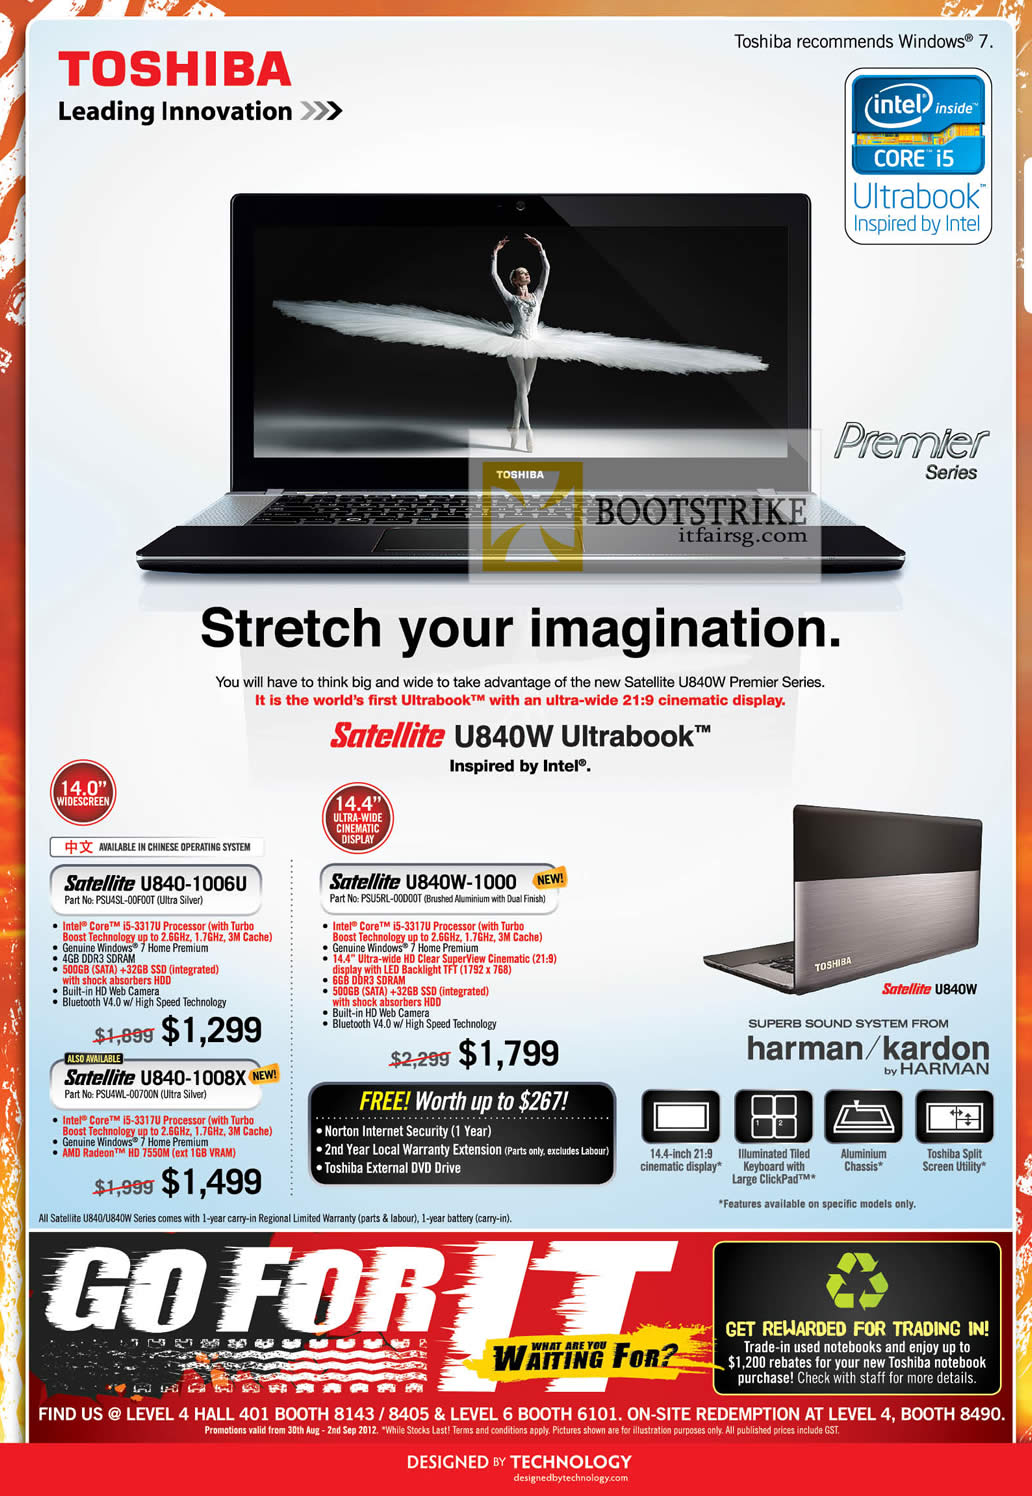 COMEX 2012 price list image brochure of Toshiba Notebooks Satellite U840 Ultrabook 1006U, 1000, 1008X